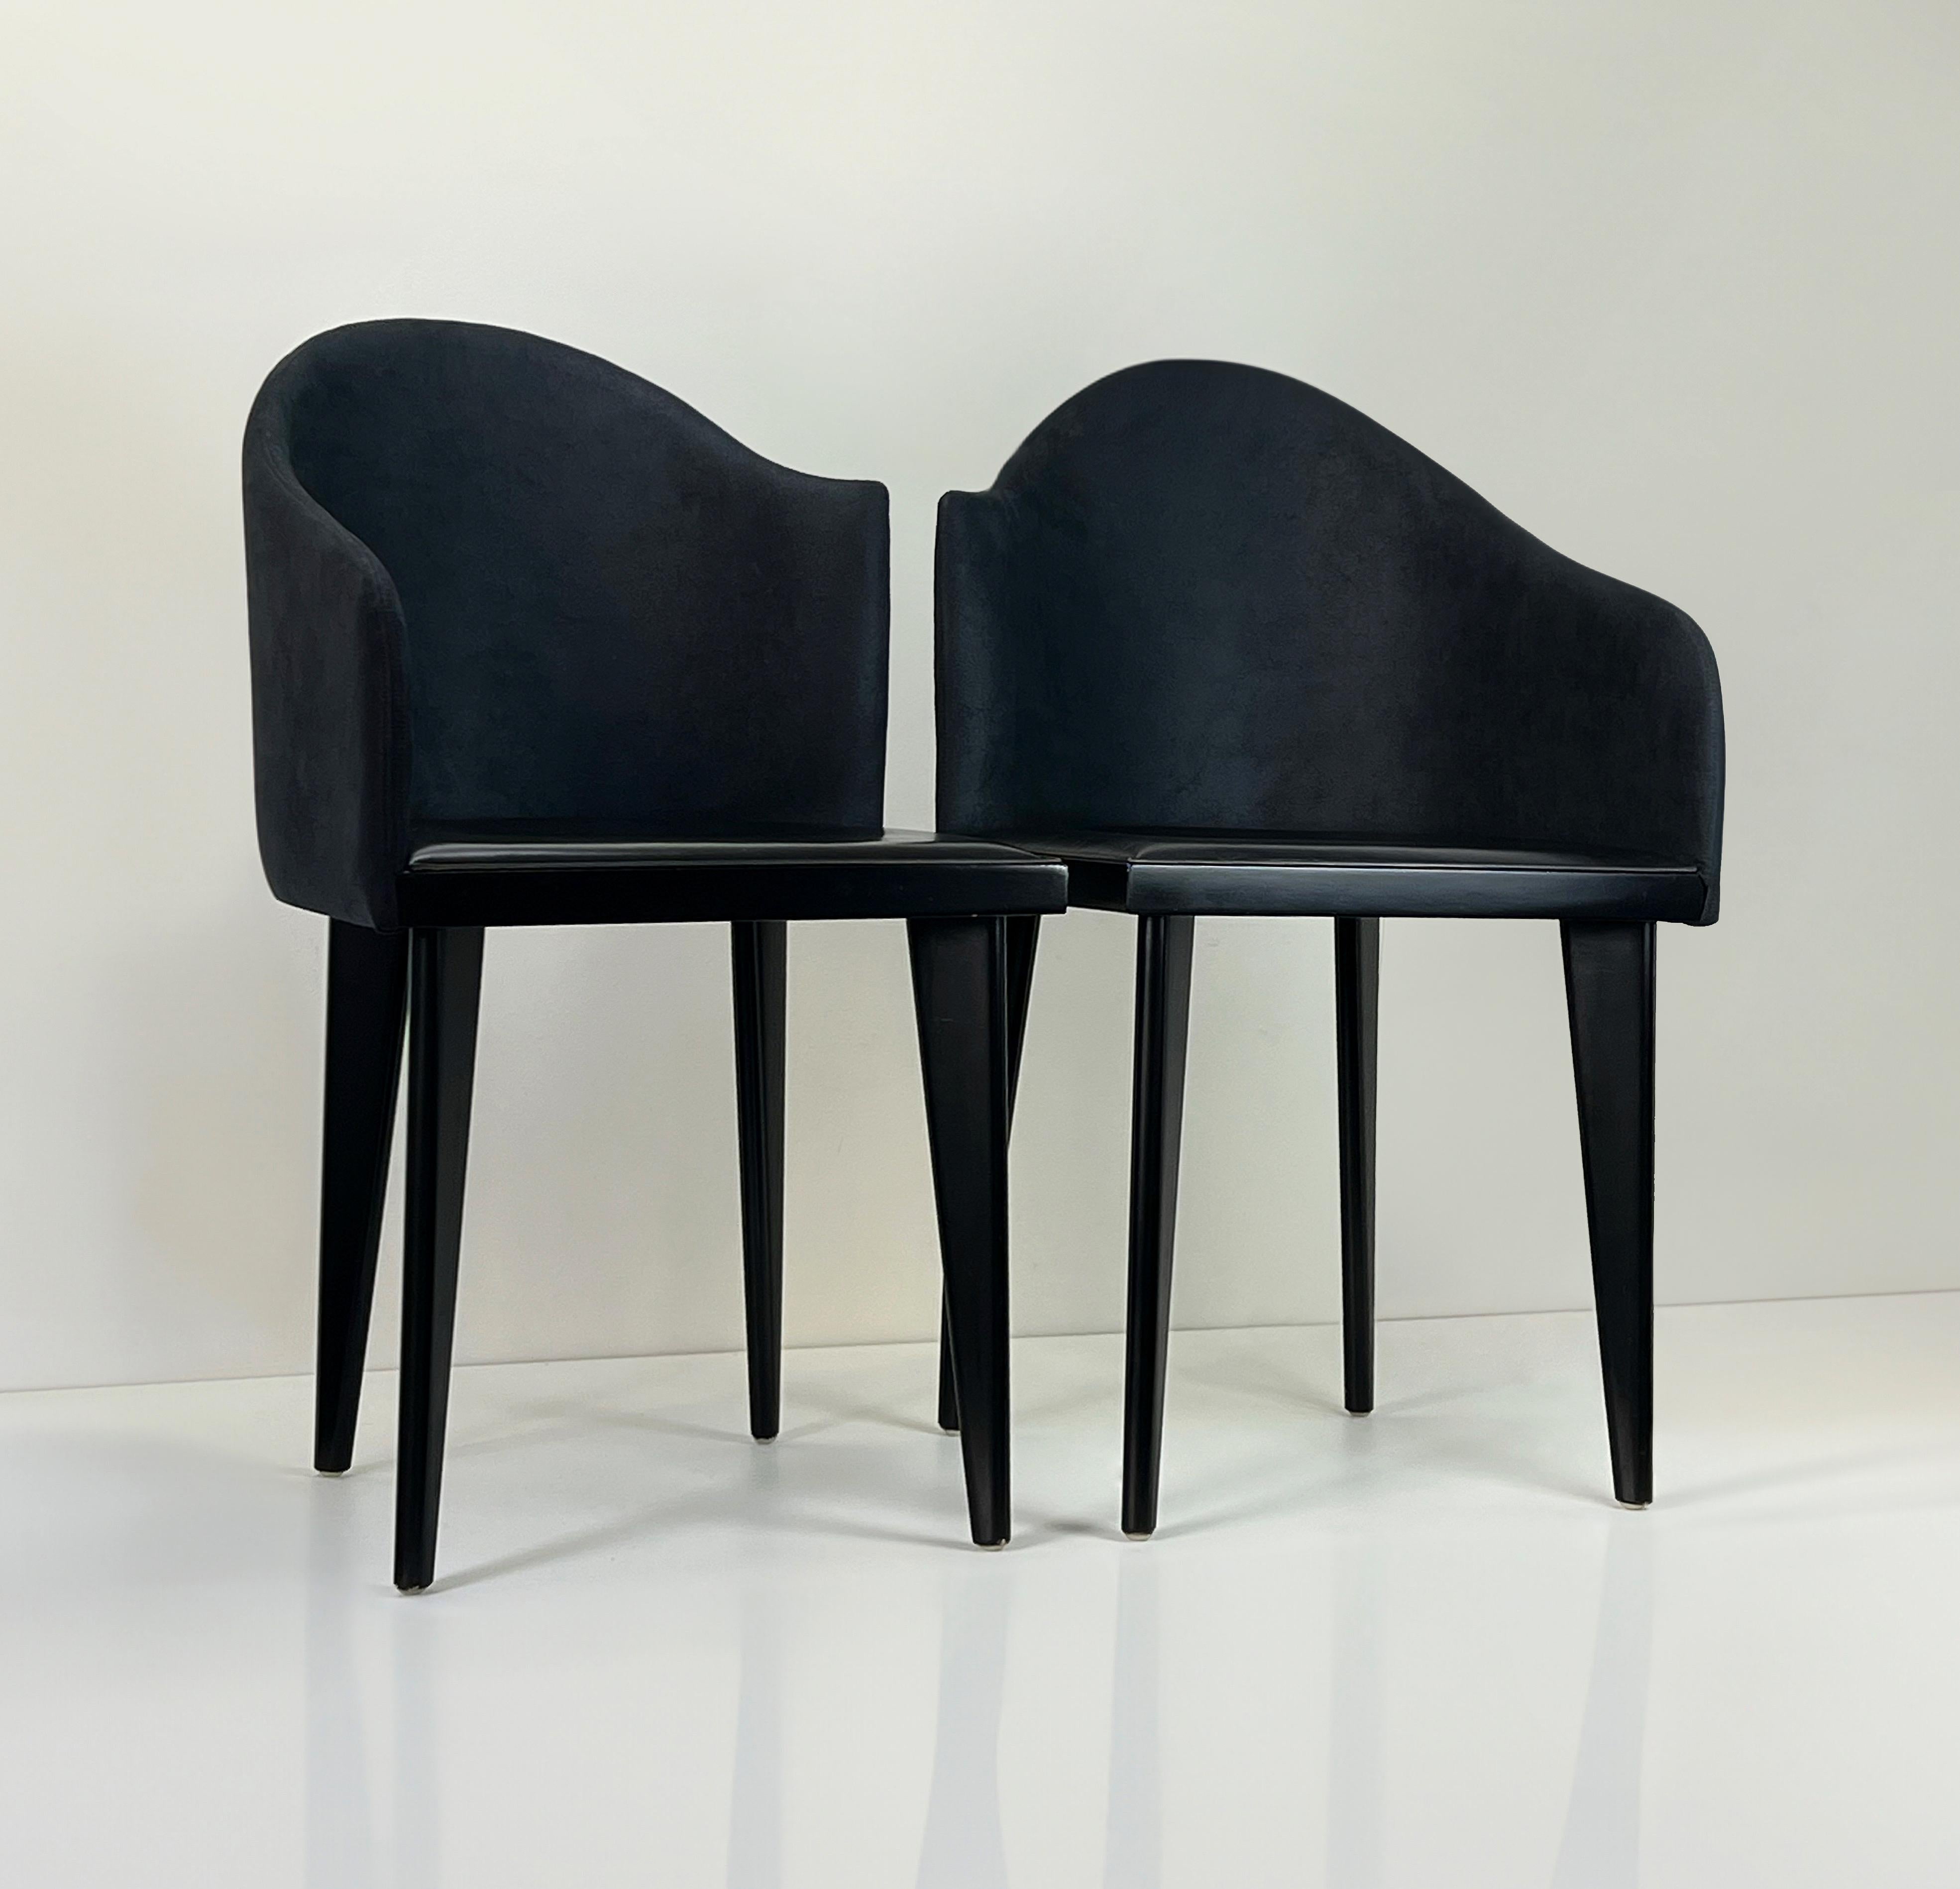 Die Toscana-Stühle von Saporiti sind bekannt für ihr elegantes Design und ihre außergewöhnliche Handwerkskunst. Saporiti ist eine italienische Möbelfirma, die für ihre hochwertigen und zeitgenössischen Designs bekannt ist, und die Toscana-Stühle